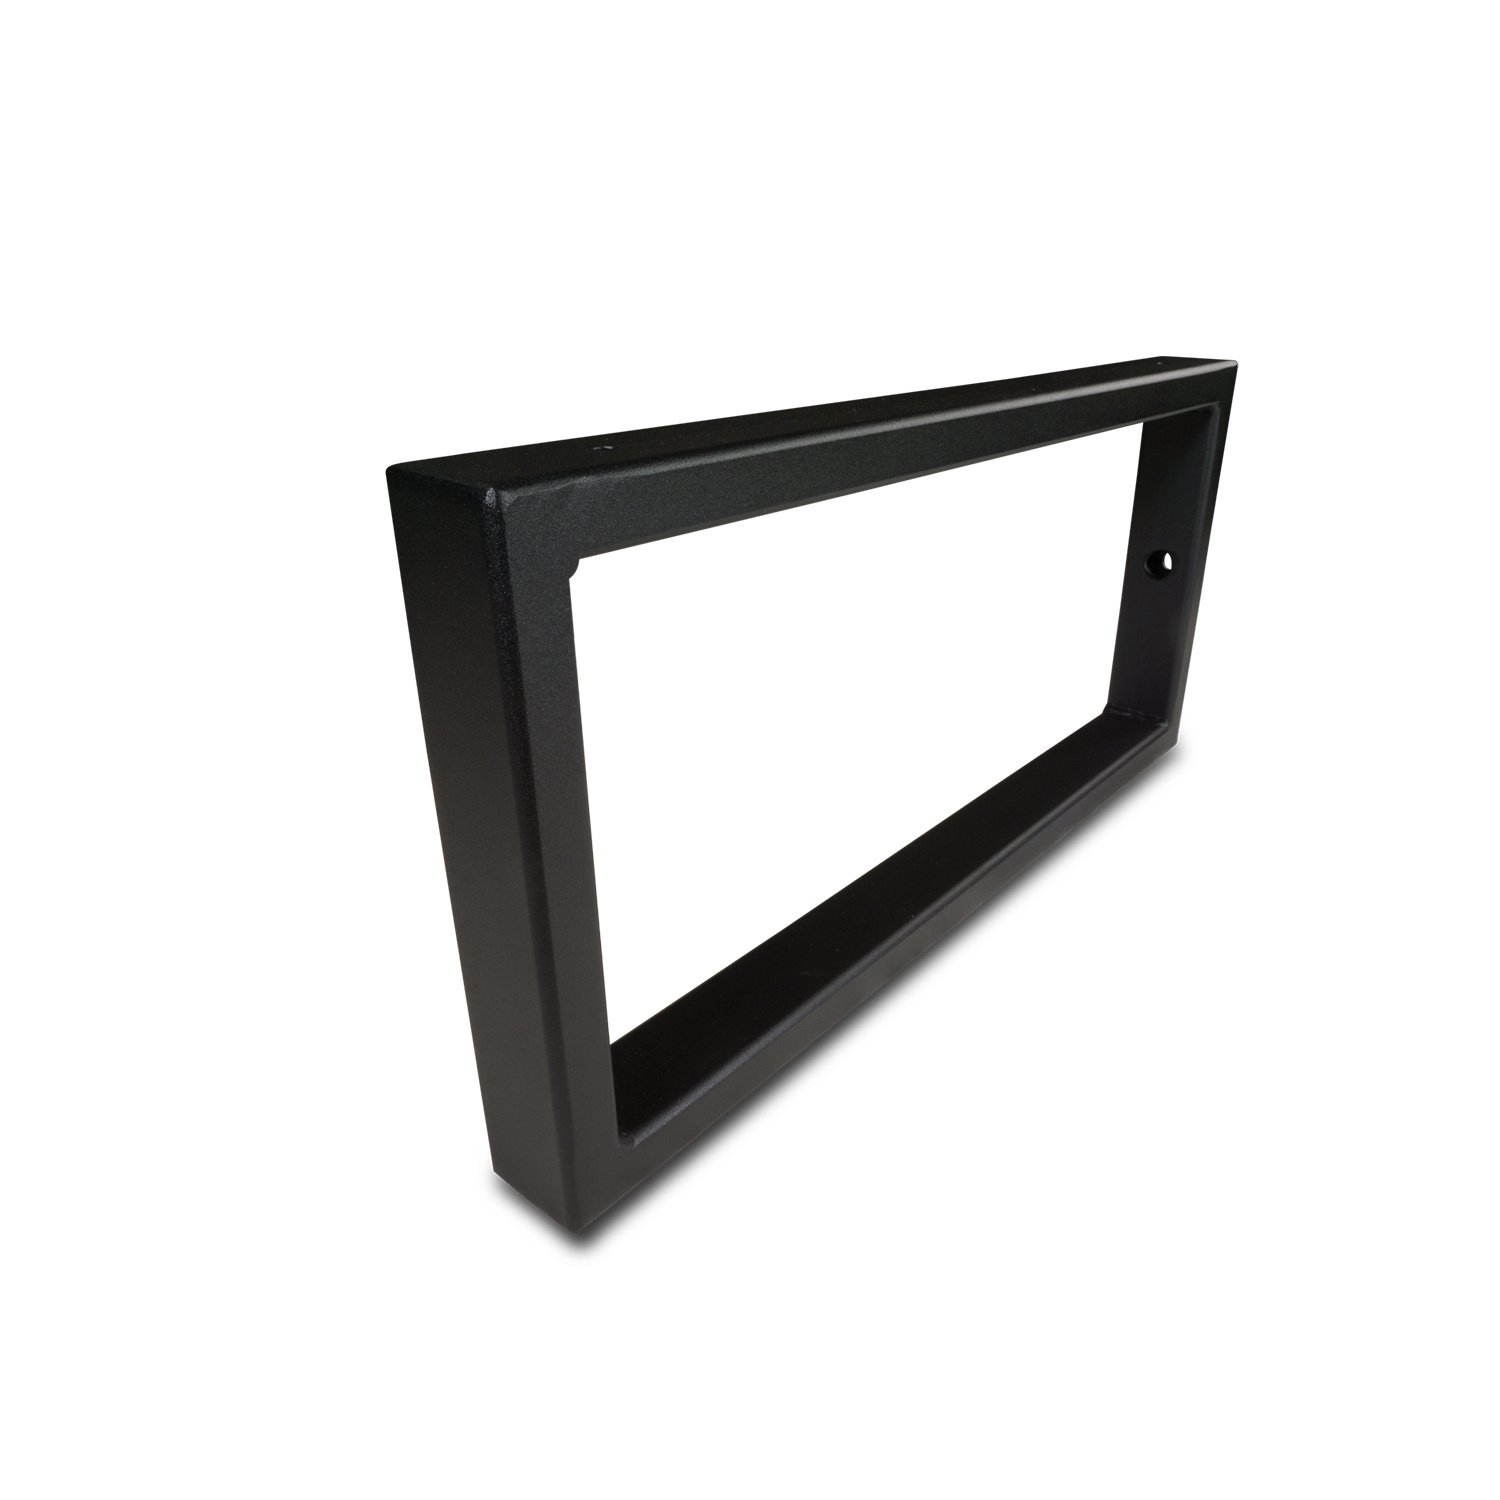  Regalhalter Rechteck schwarz - SET (2 Stück) - 20x10 cm - Regalträger Metall - 40x20x2 mm Profil - Wandhalterung Stahl – Beschichtet